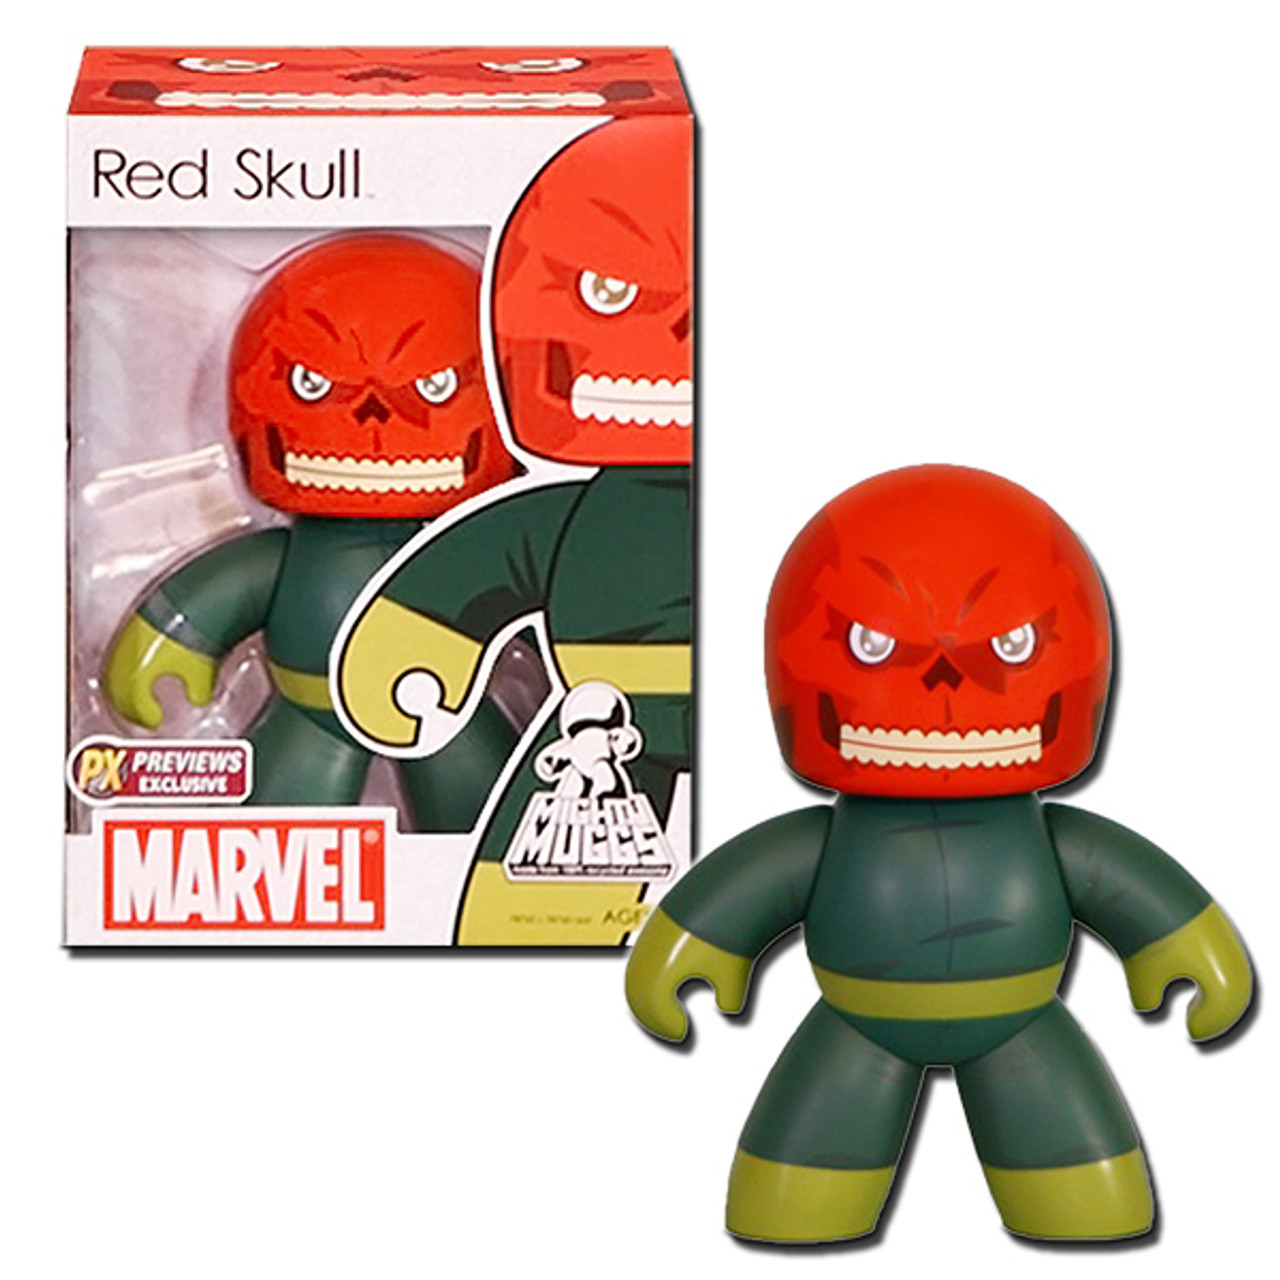 Hasbro Marvel Mighty Muggs Red Skull